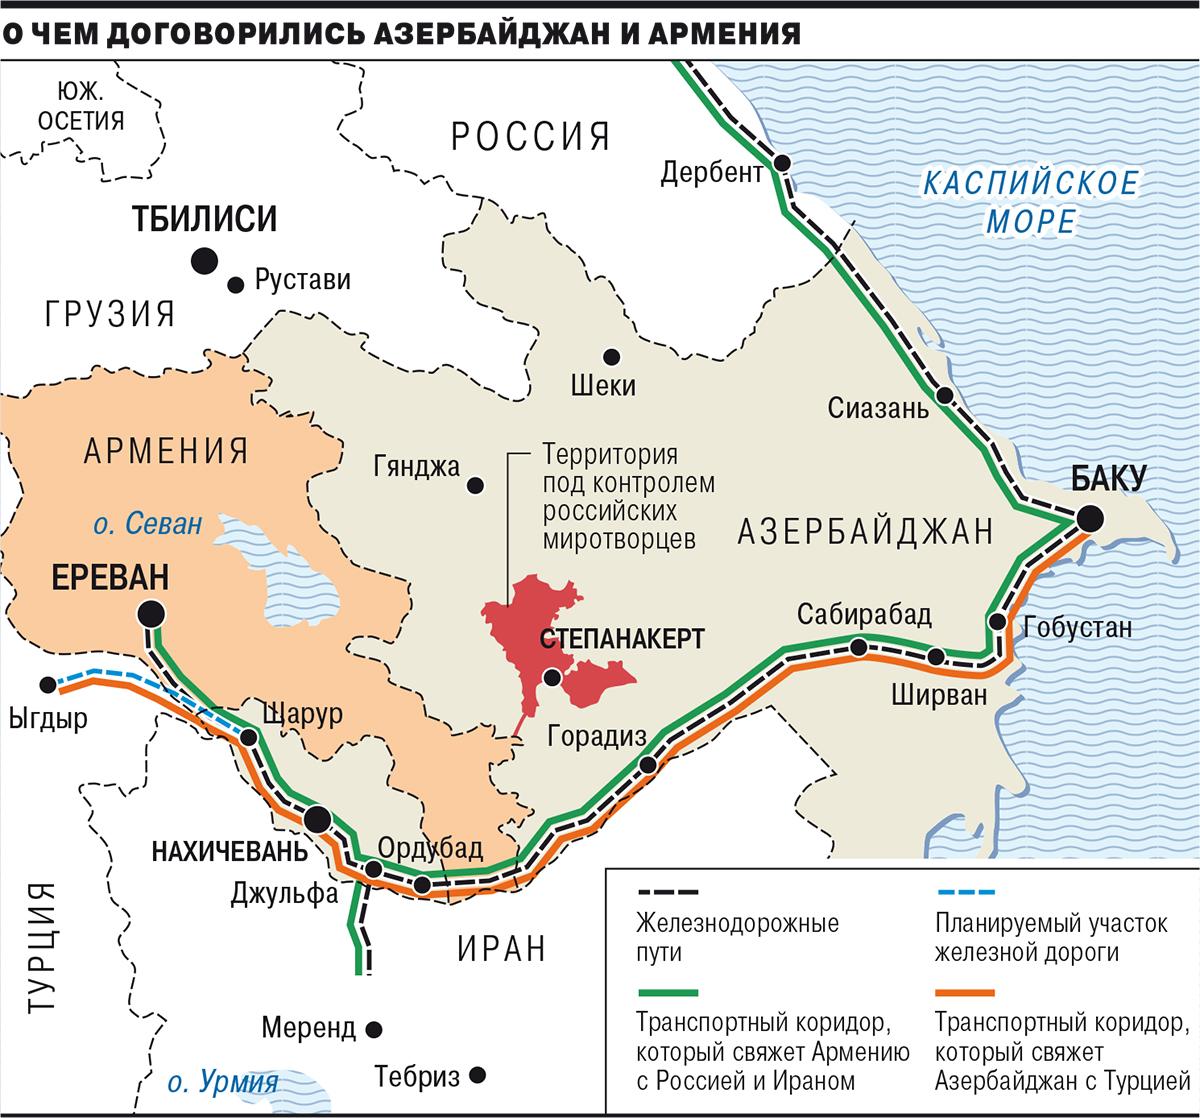 «Կոմերսանտը» հրապարակել է տրանսպորտային միջանցքների քարտեզը, որի շուրջ համաձայնության են եկել Հայաստանն ու Ադրբեջանը